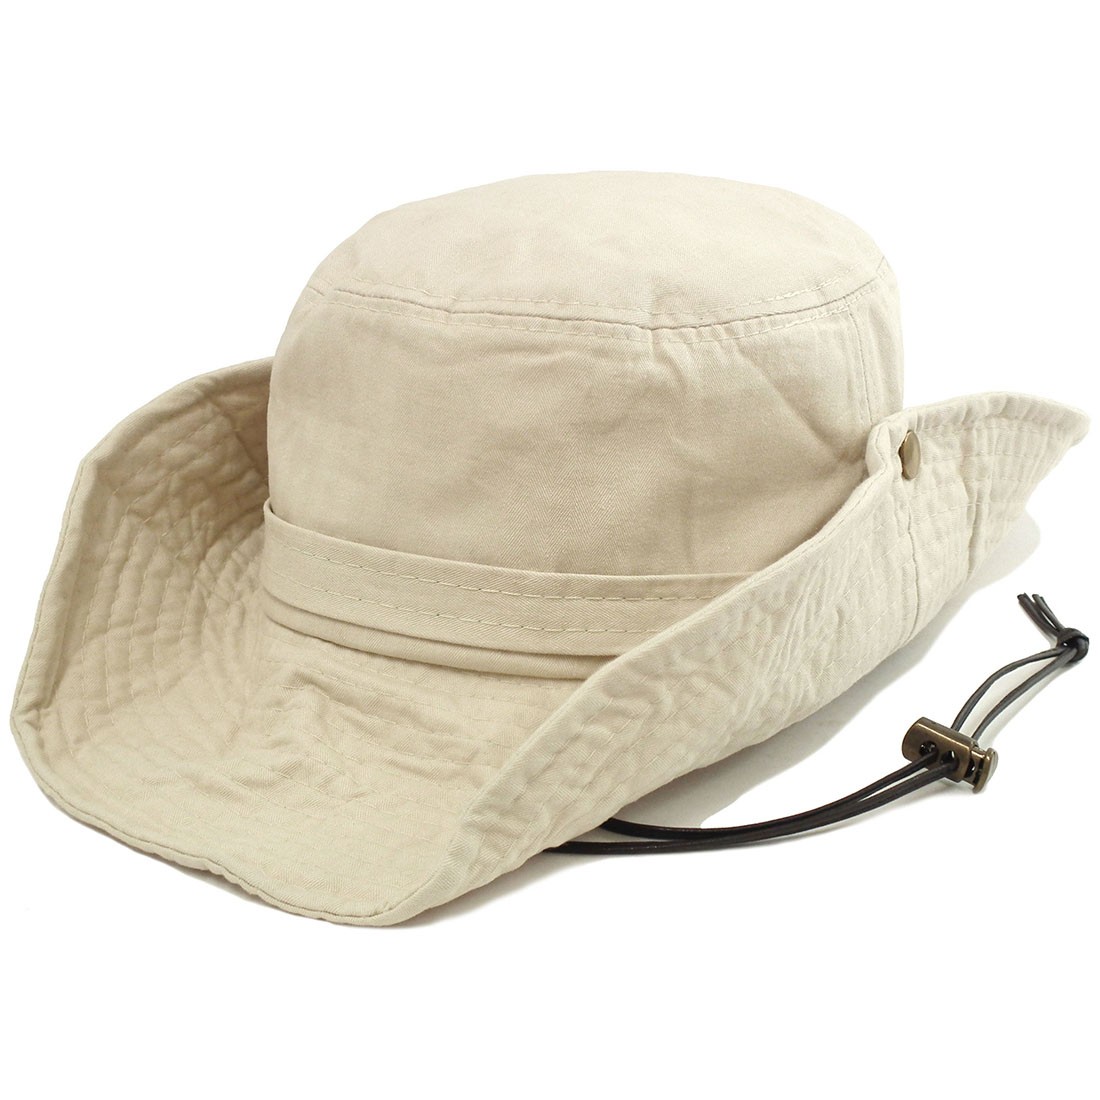 サファリハット 帽子 メンズ 春夏 レディース 家族でお揃い 54cm-64cm ナチュラル hat...